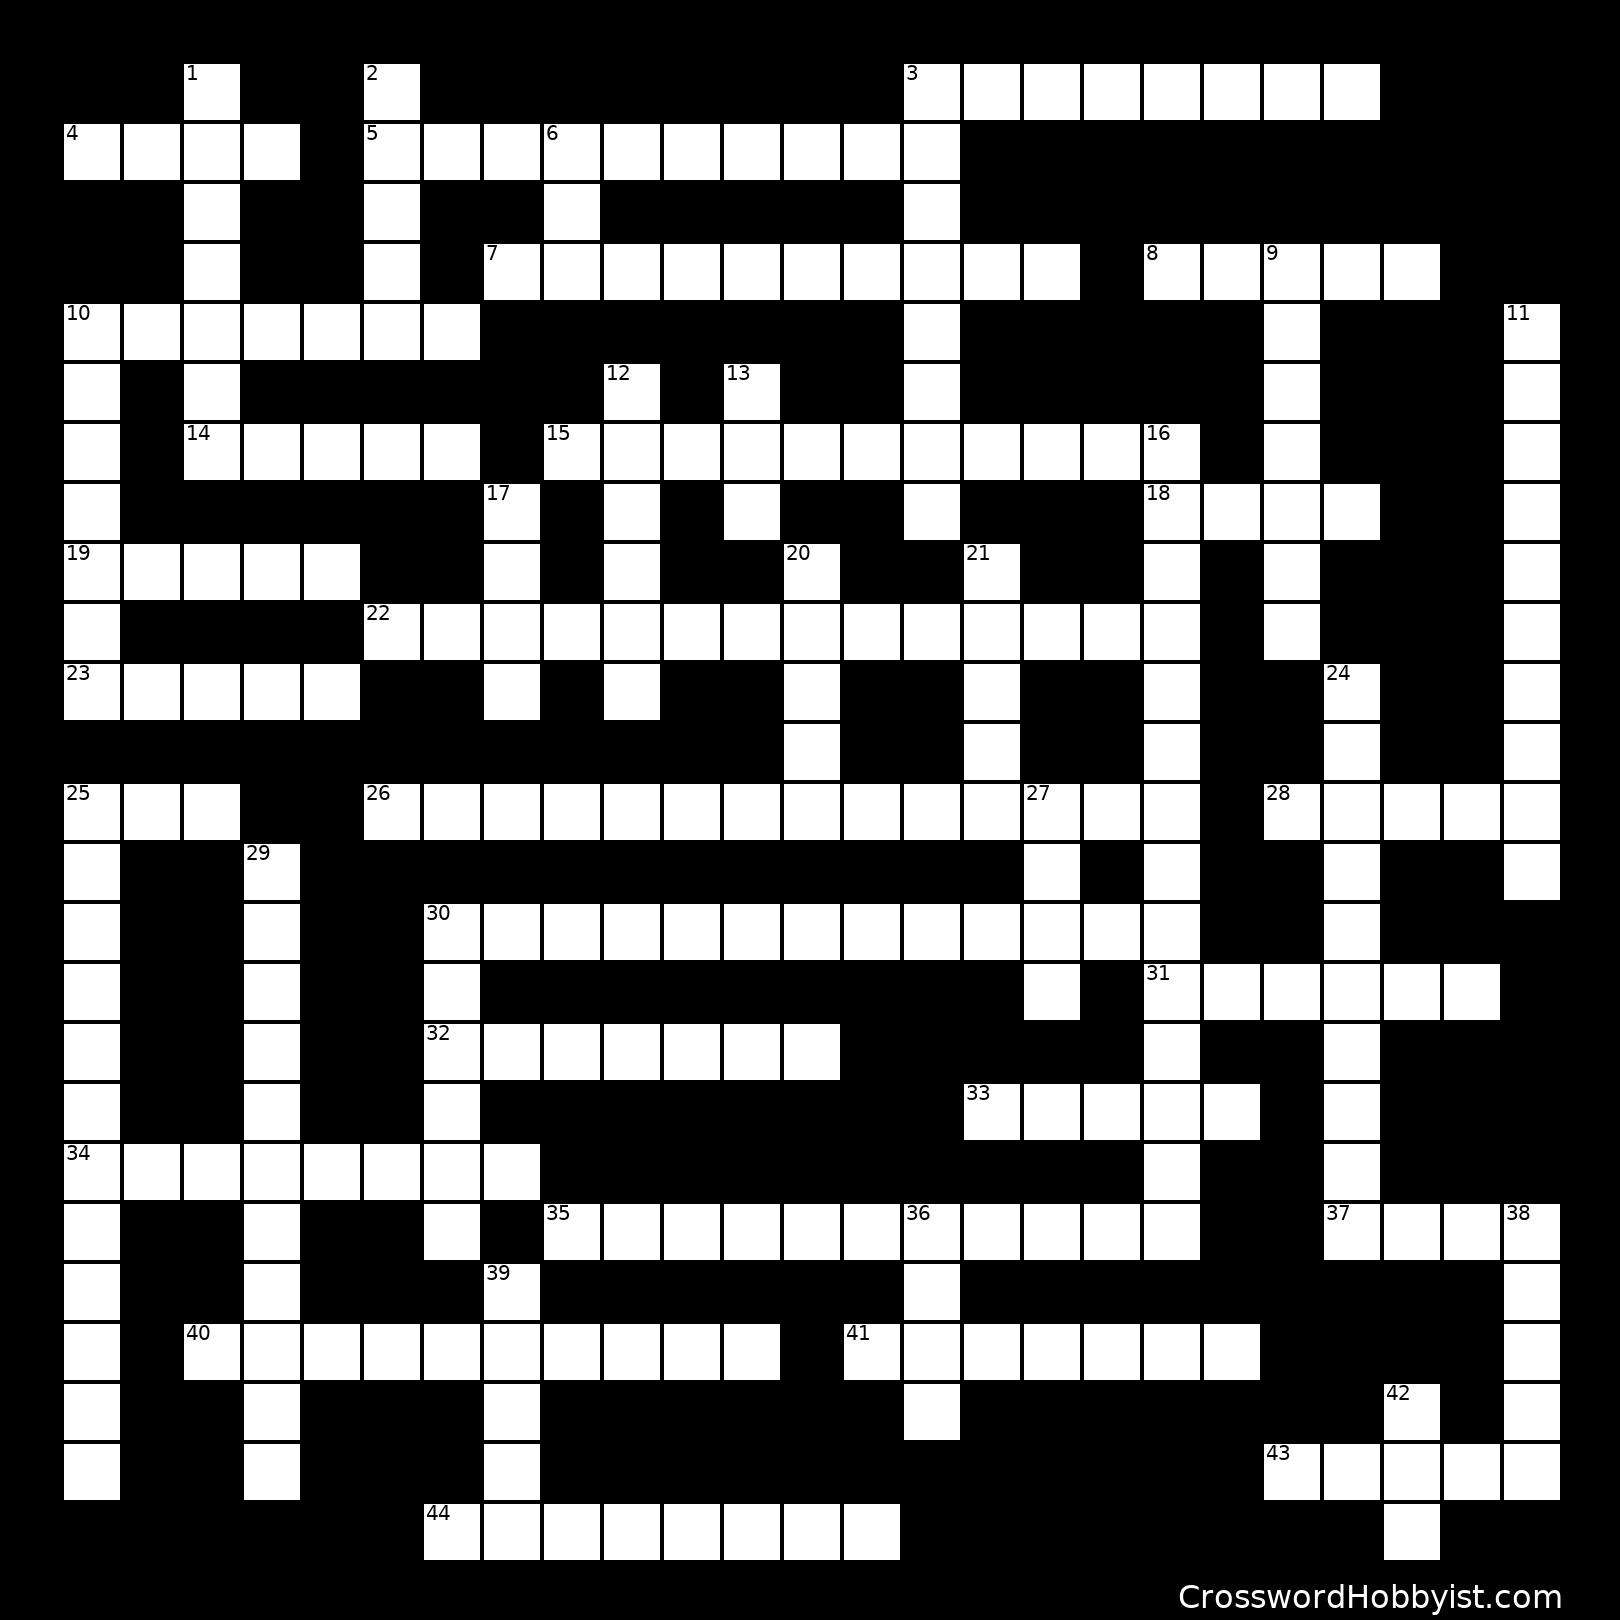 Automotive Crossword #1 - Crossword Puzzle - Printable Automotive Crossword Puzzles